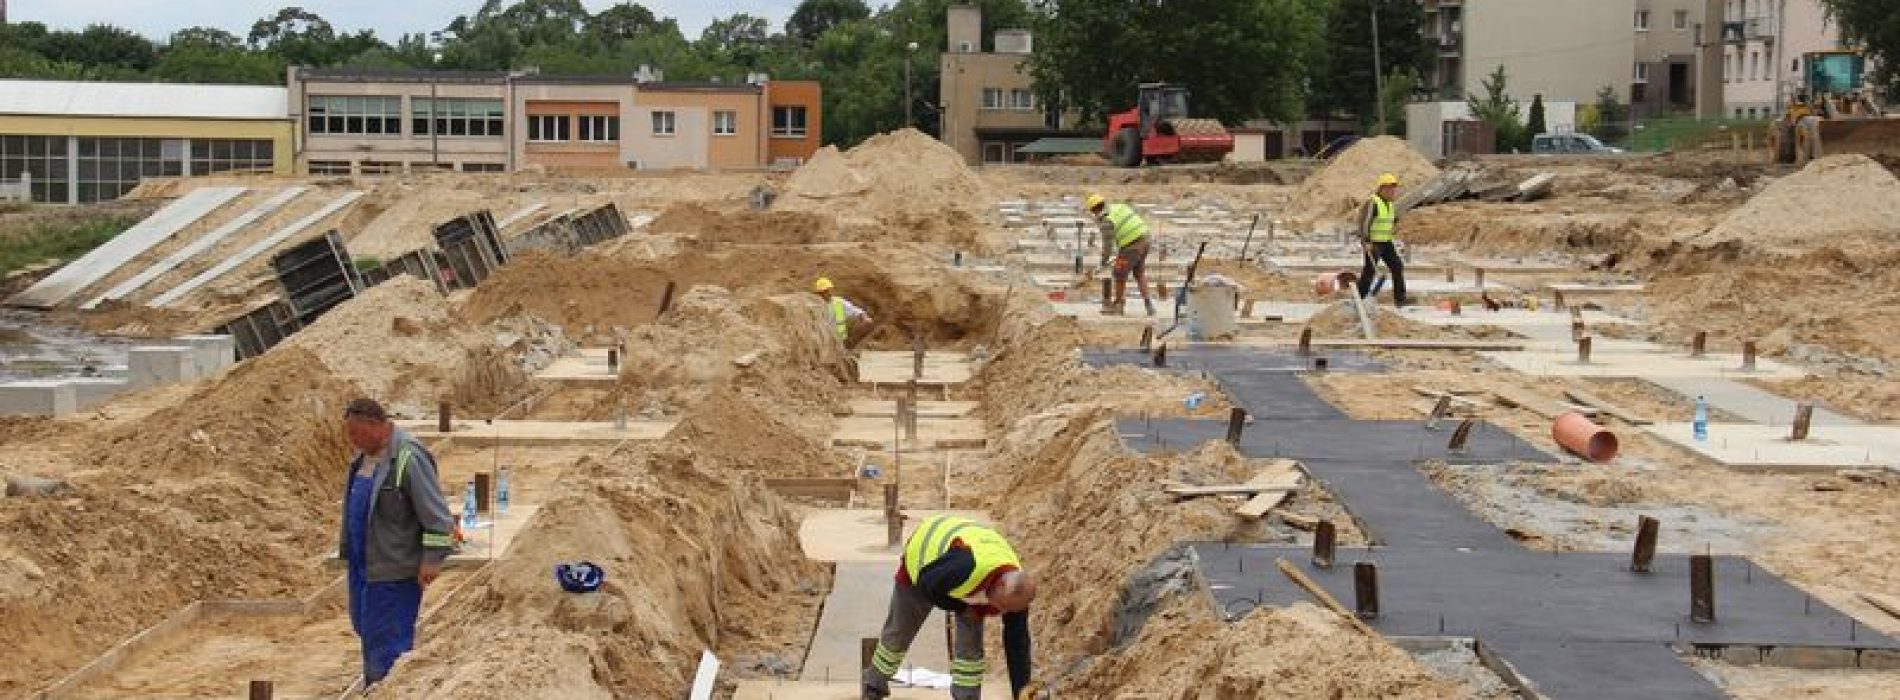 W Kaliszu trwa budowa trybun i areny sportowej